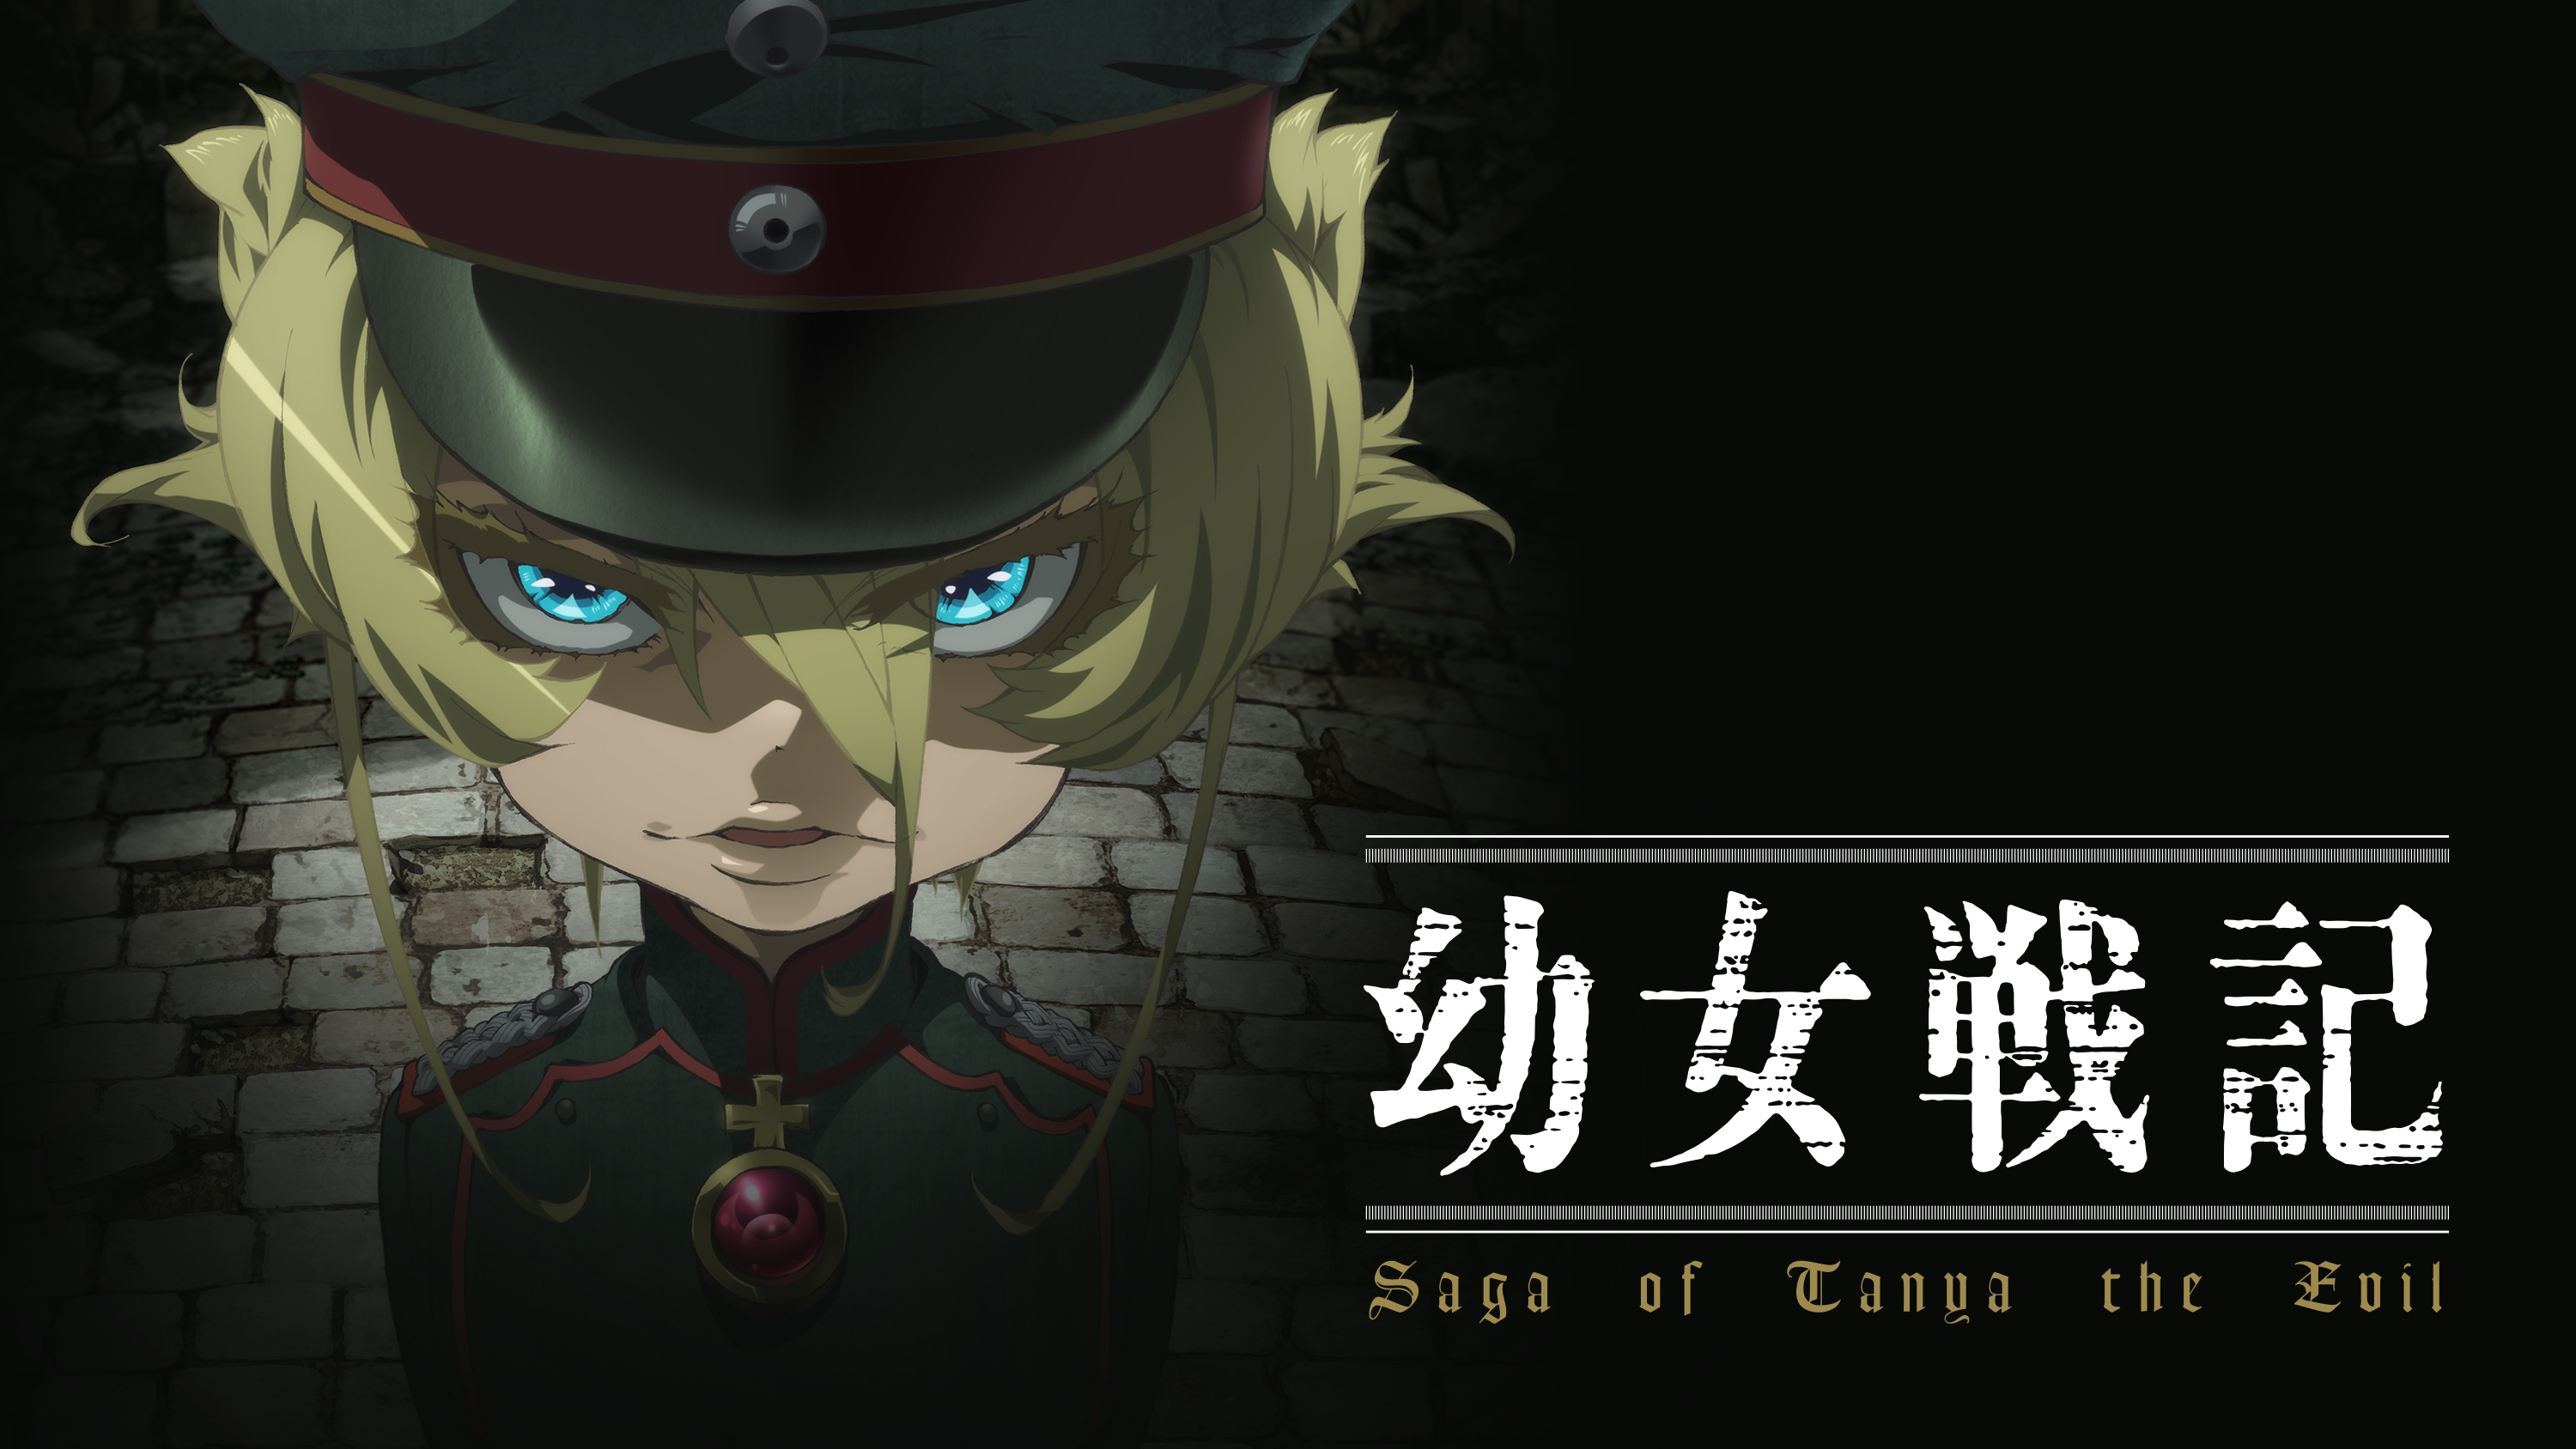 Melhor anime de guerra - Saga de tanya the evil